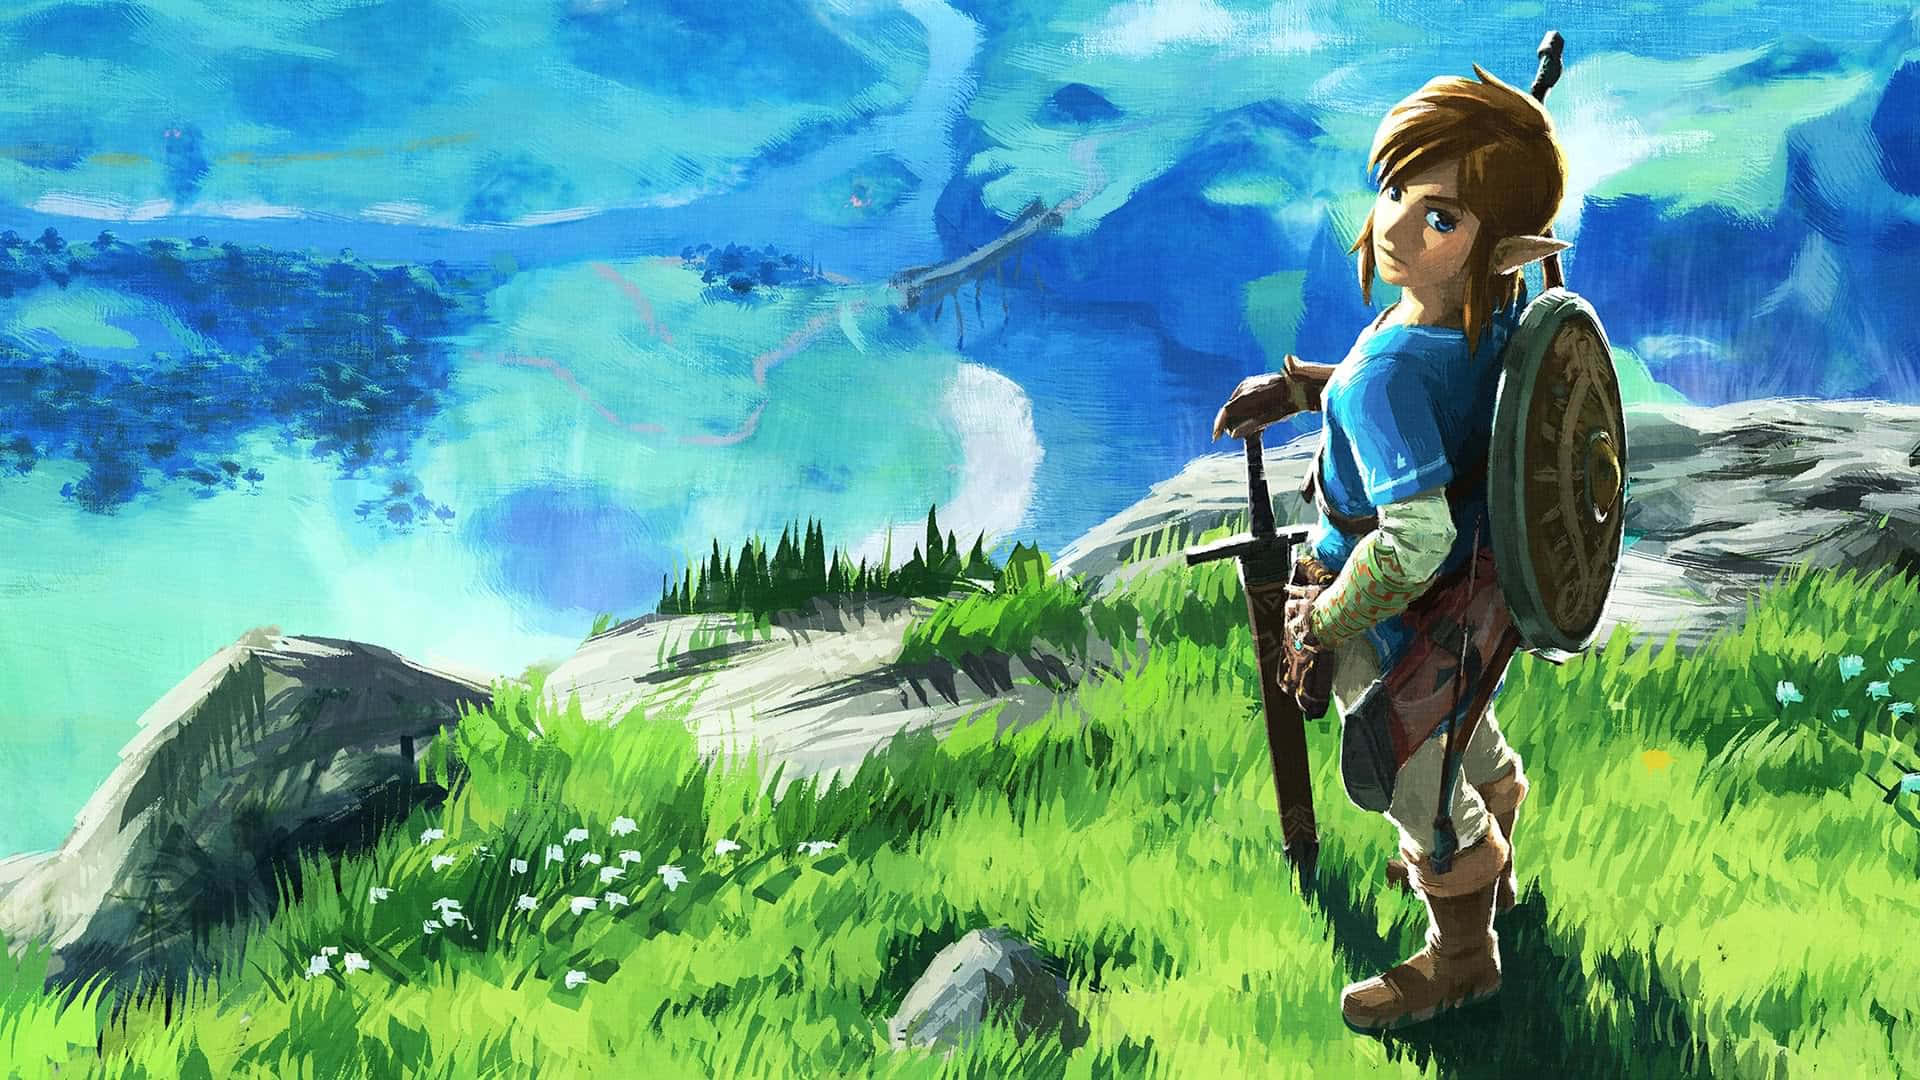 Link Defending Hyrule in The Legend of Zelda: Breath of the Wild Wallpaper